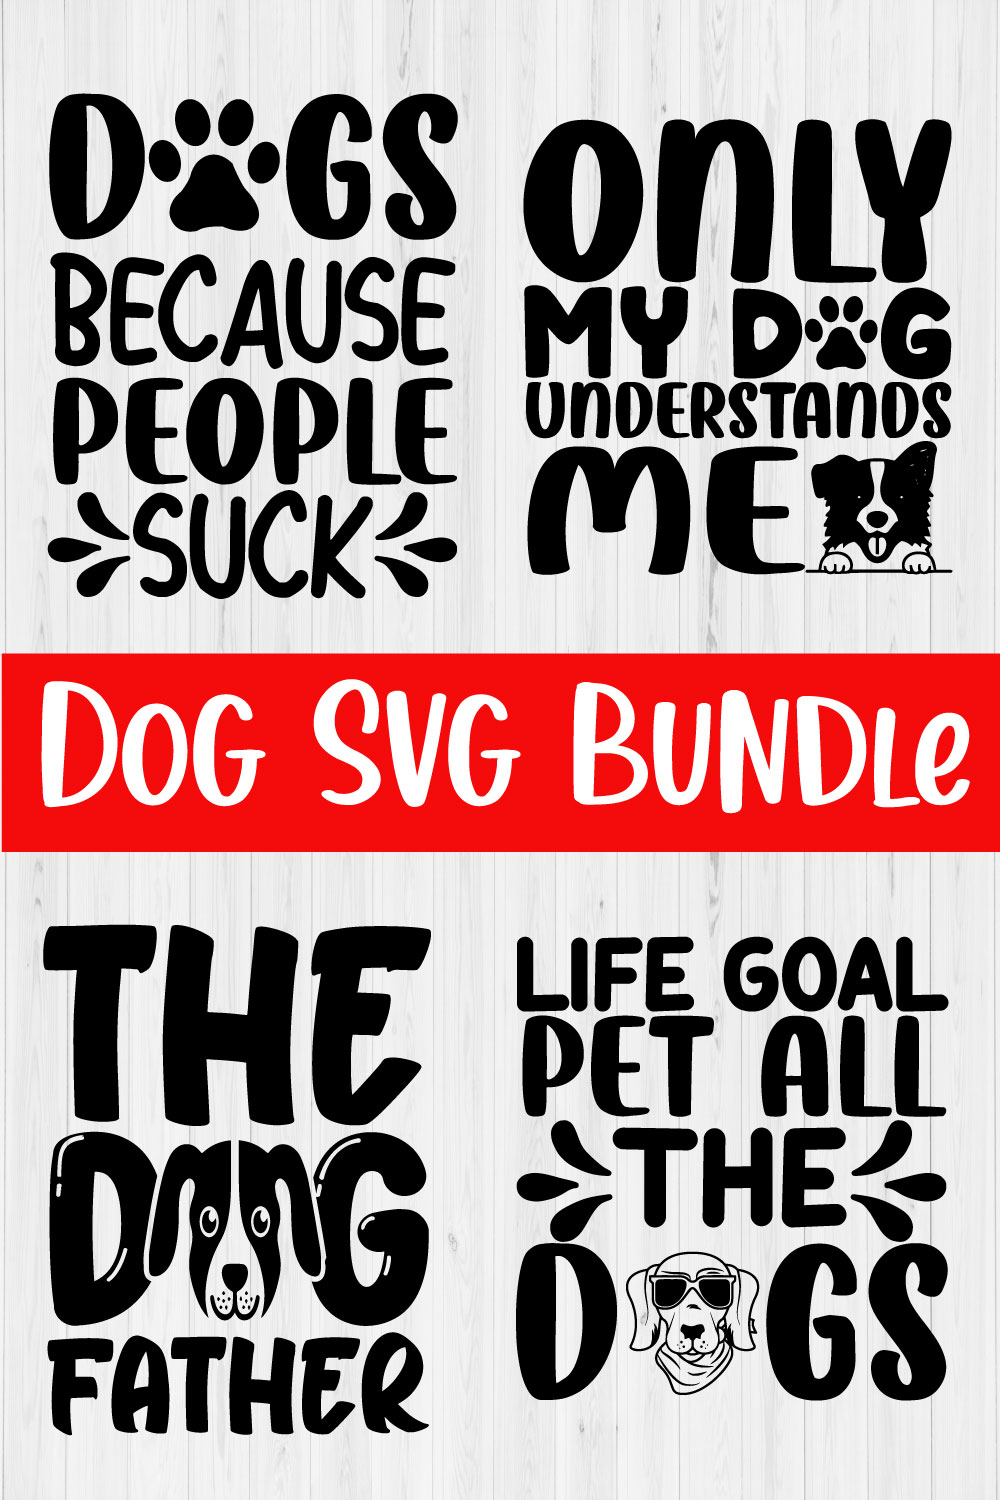 Dog Svg Typography Design Bundle4 pinterest preview image.